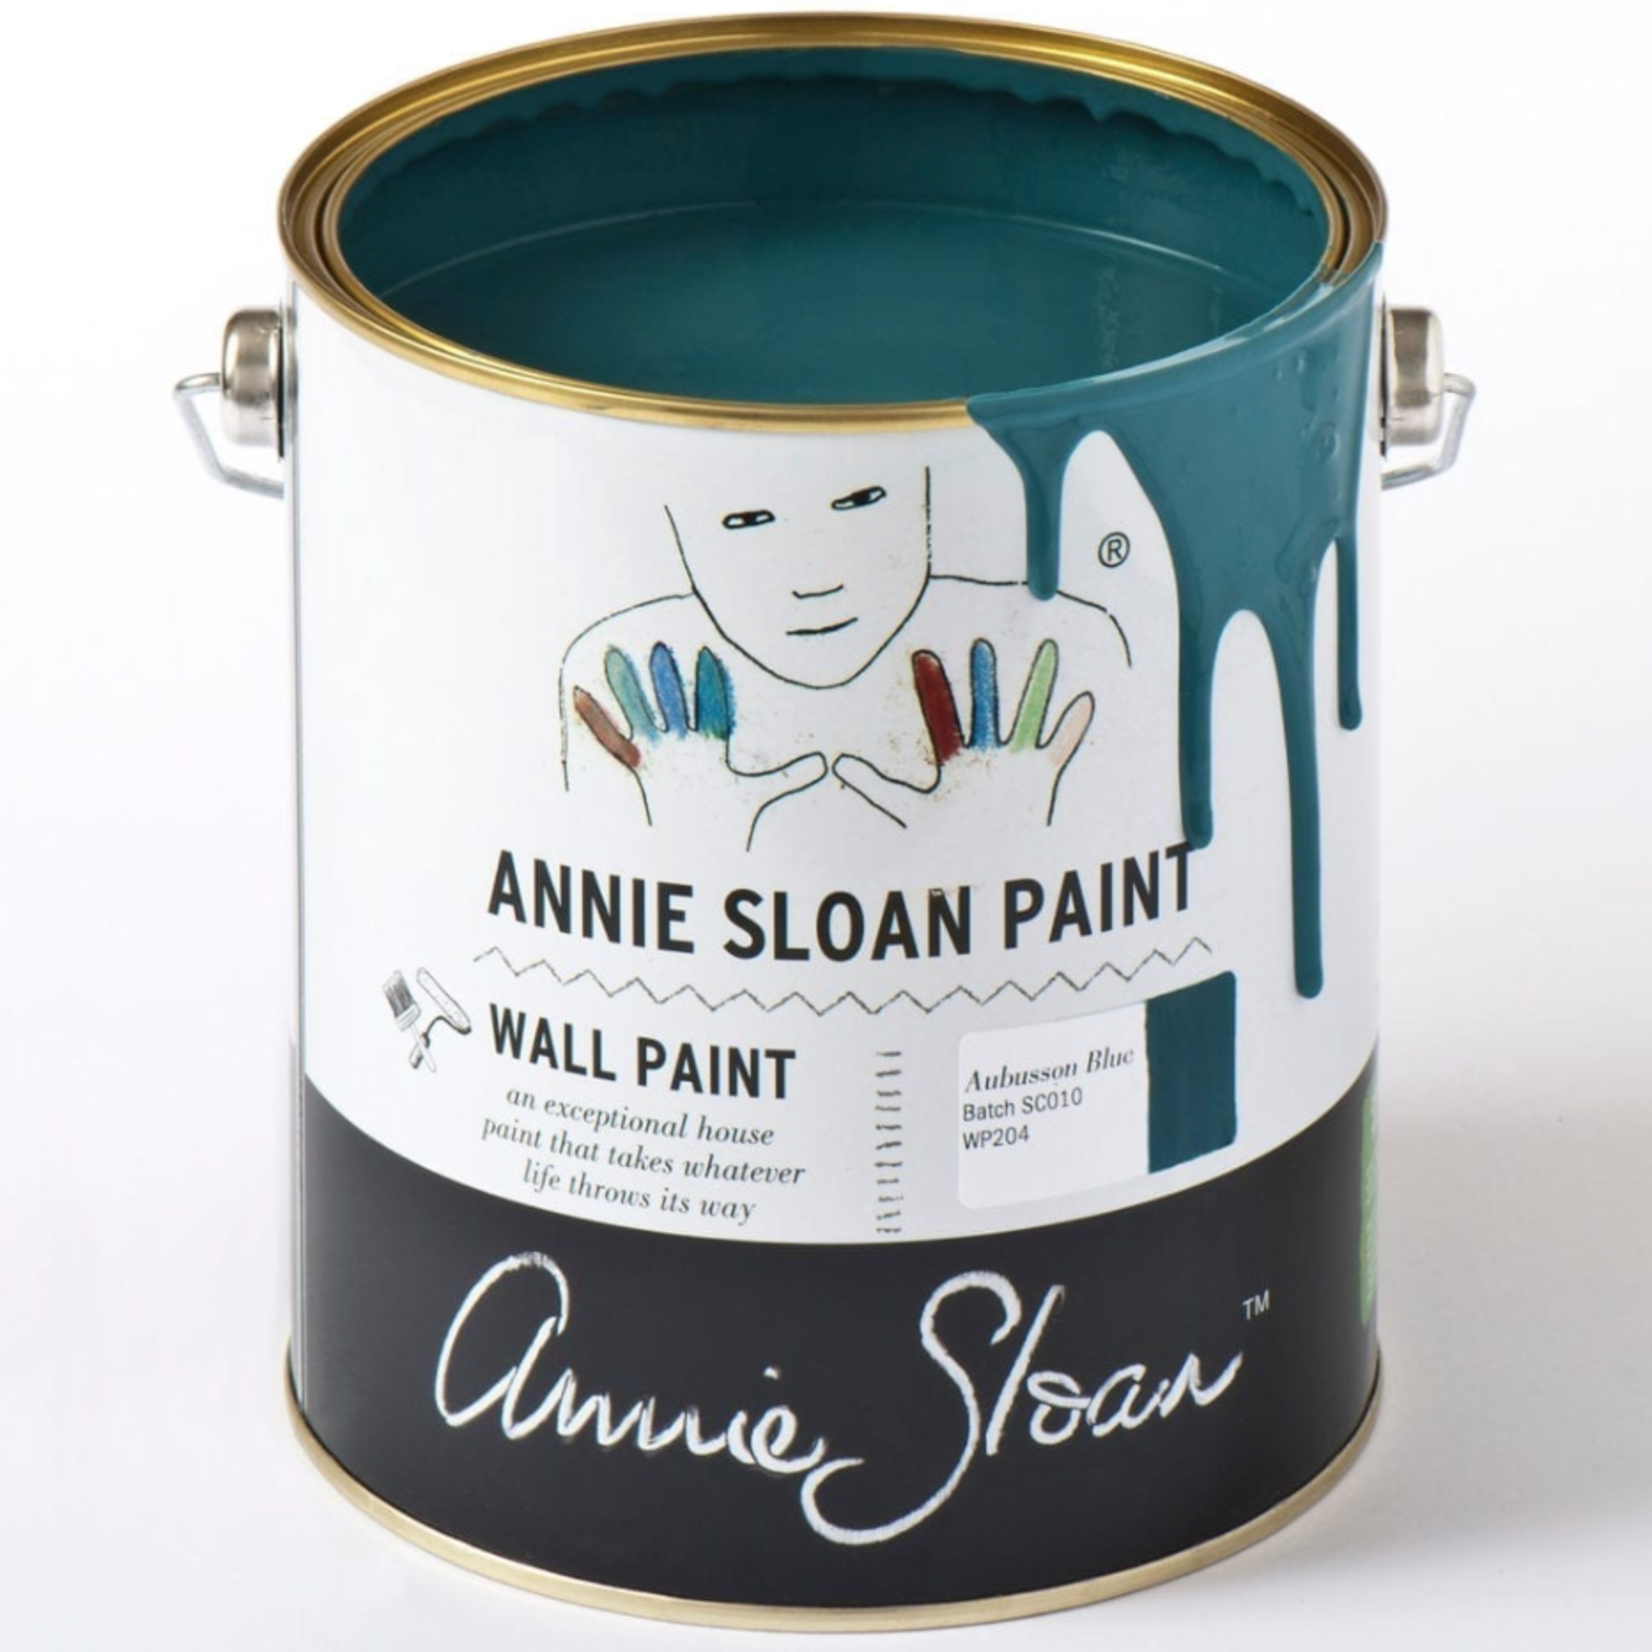 Annie Sloan Annie Sloan Aubusson Blue wall paint